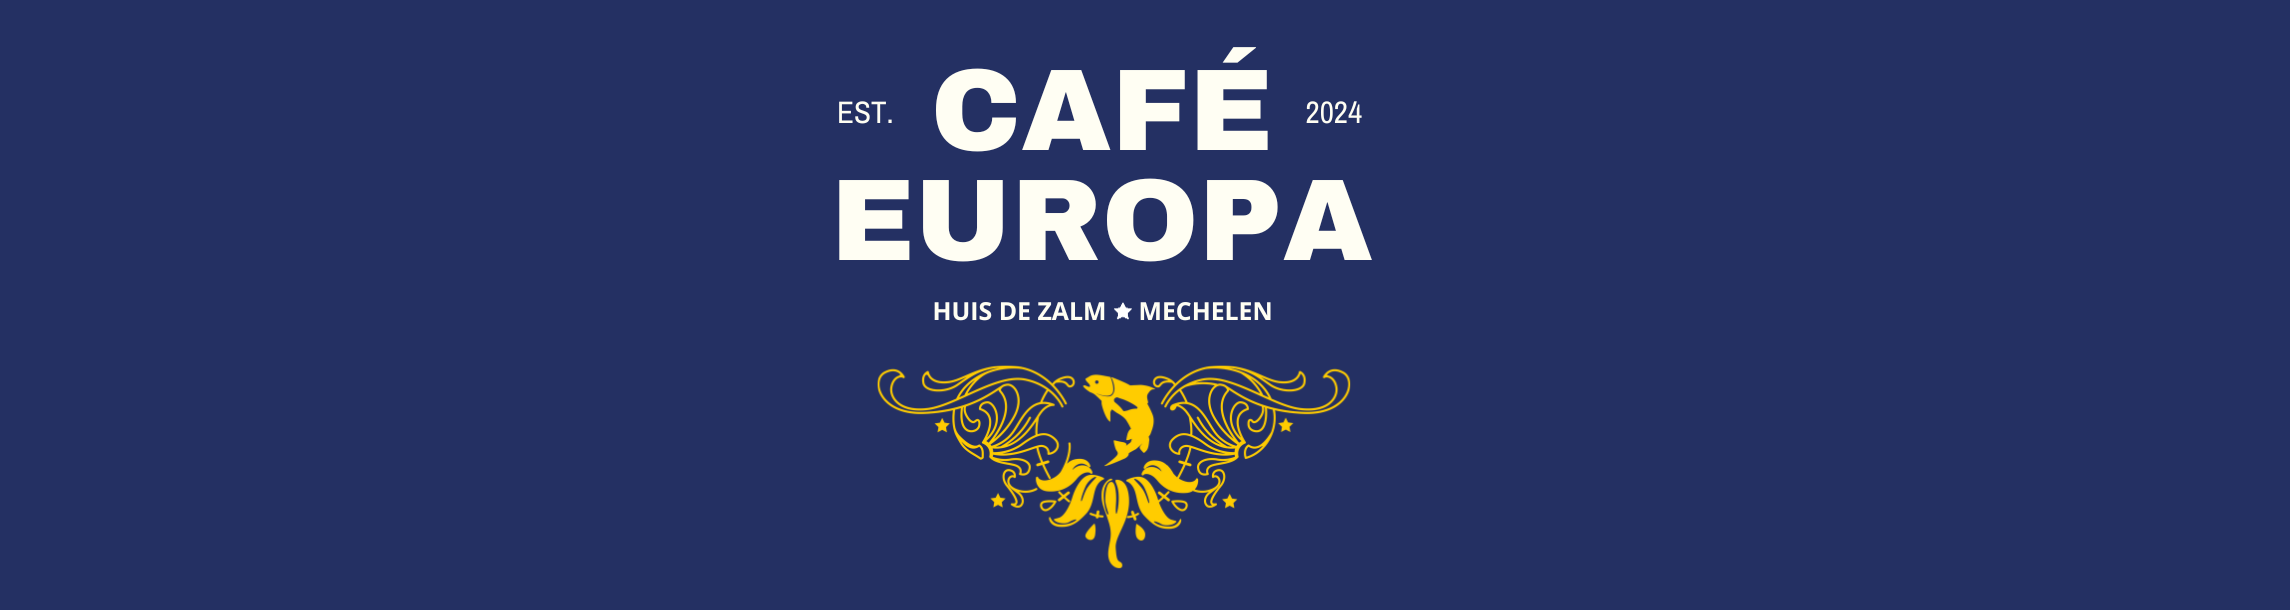 Café Europa: Europa, dat zijn wij